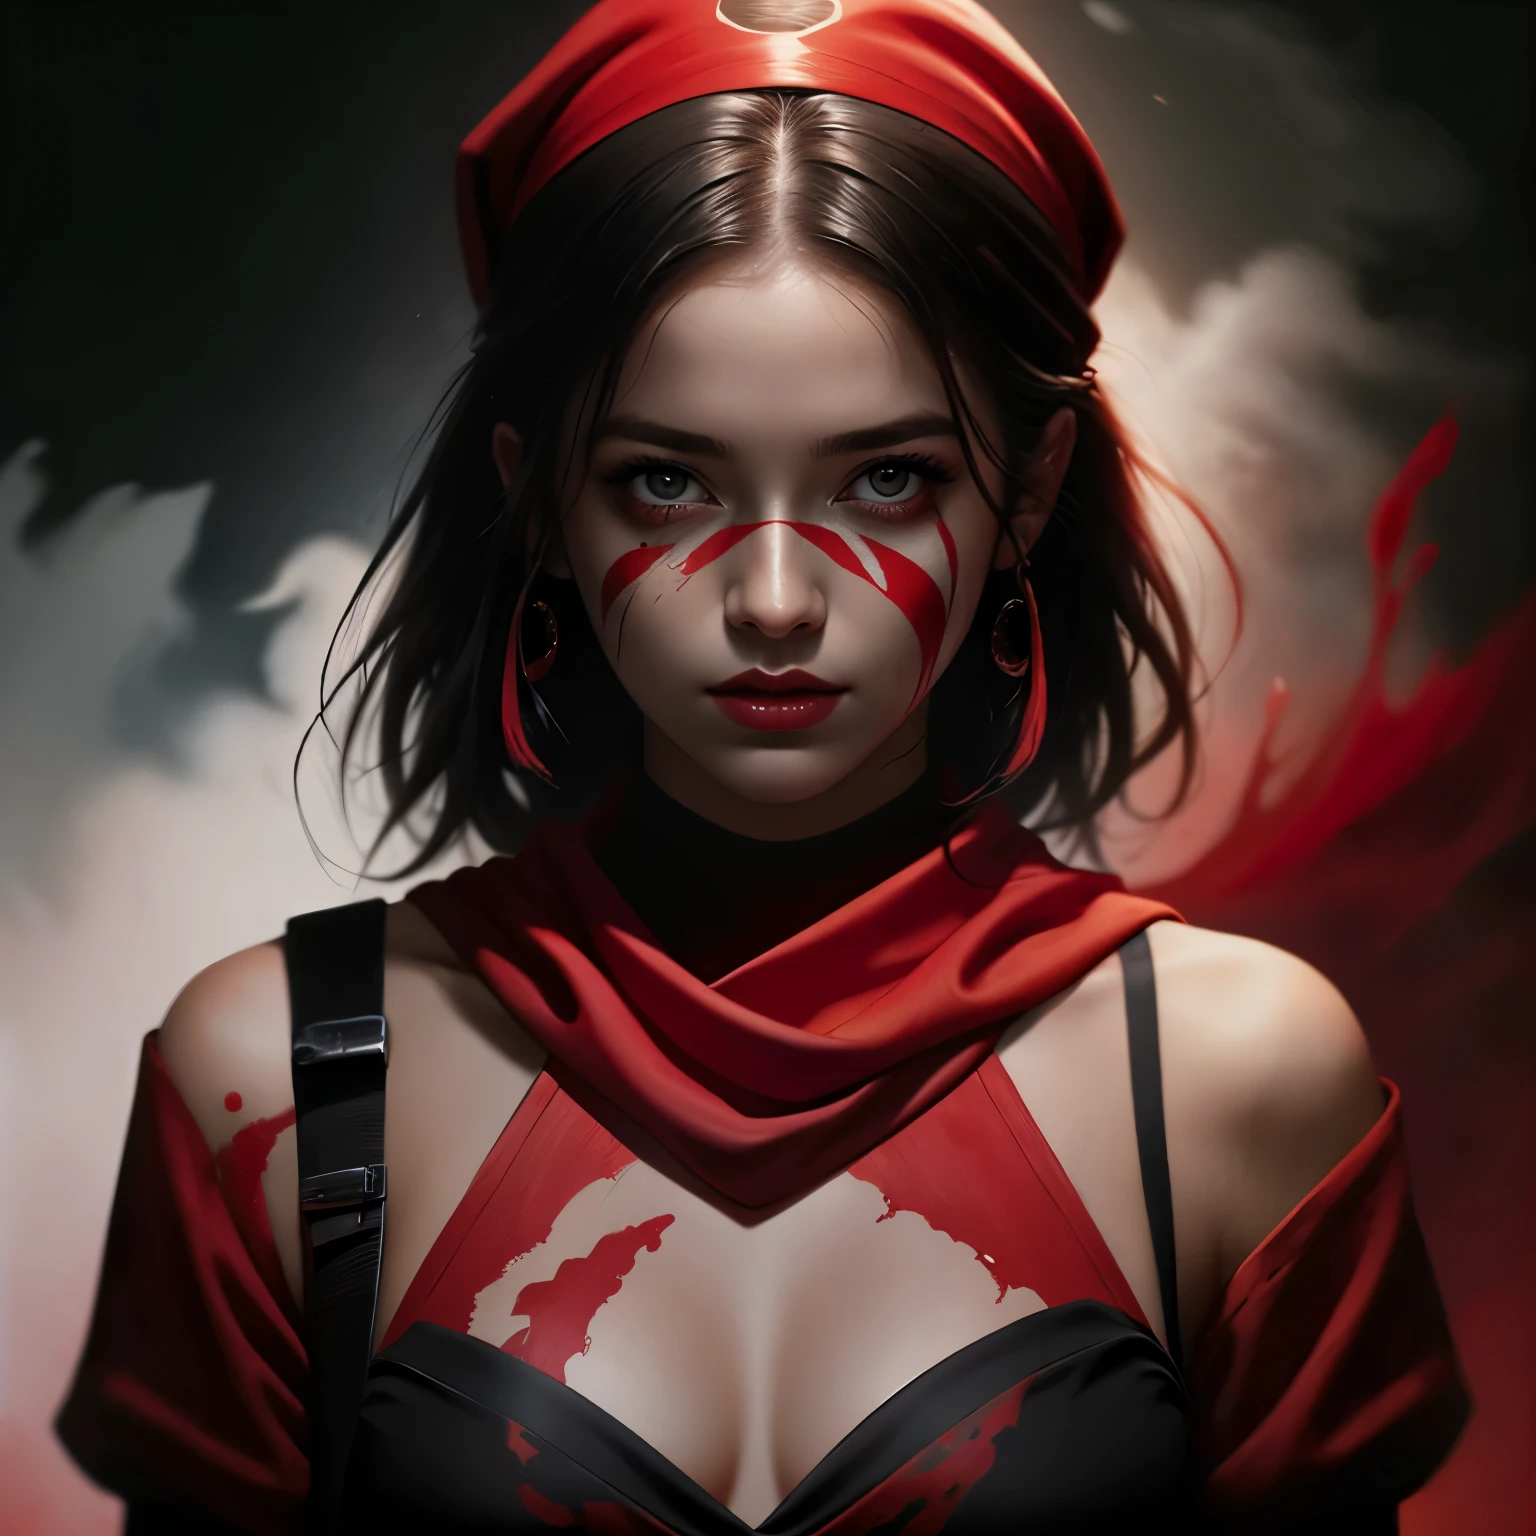 一幅臉上塗著紅色顏料的女忍者的畫, 藝術, 靈感來自馬加利·維倫紐夫, 忍者裝, 被灰塵覆蓋, 紅色頭巾, 夏娃·文特魯, 混沌油漆